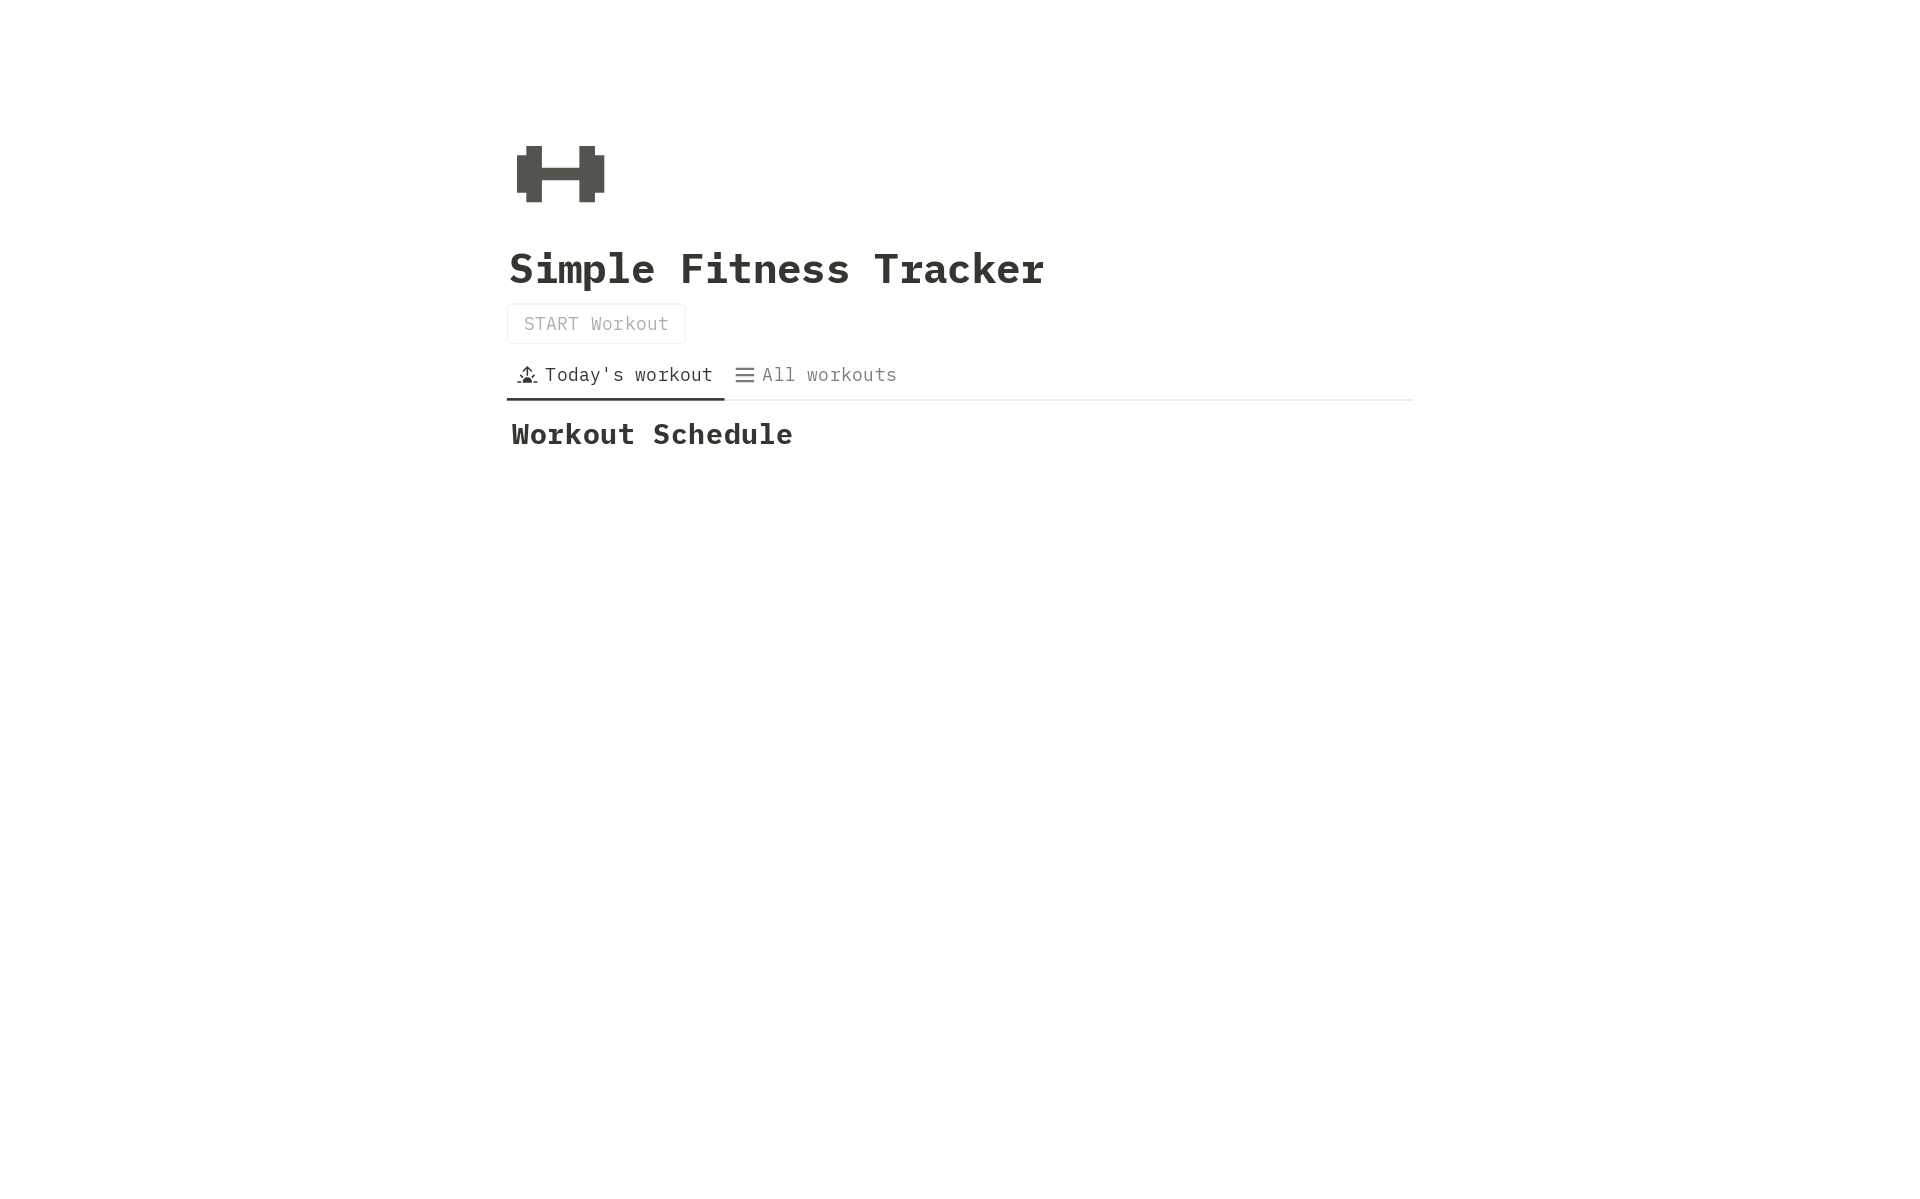 Aperçu du modèle de Simple Fitness Tracker